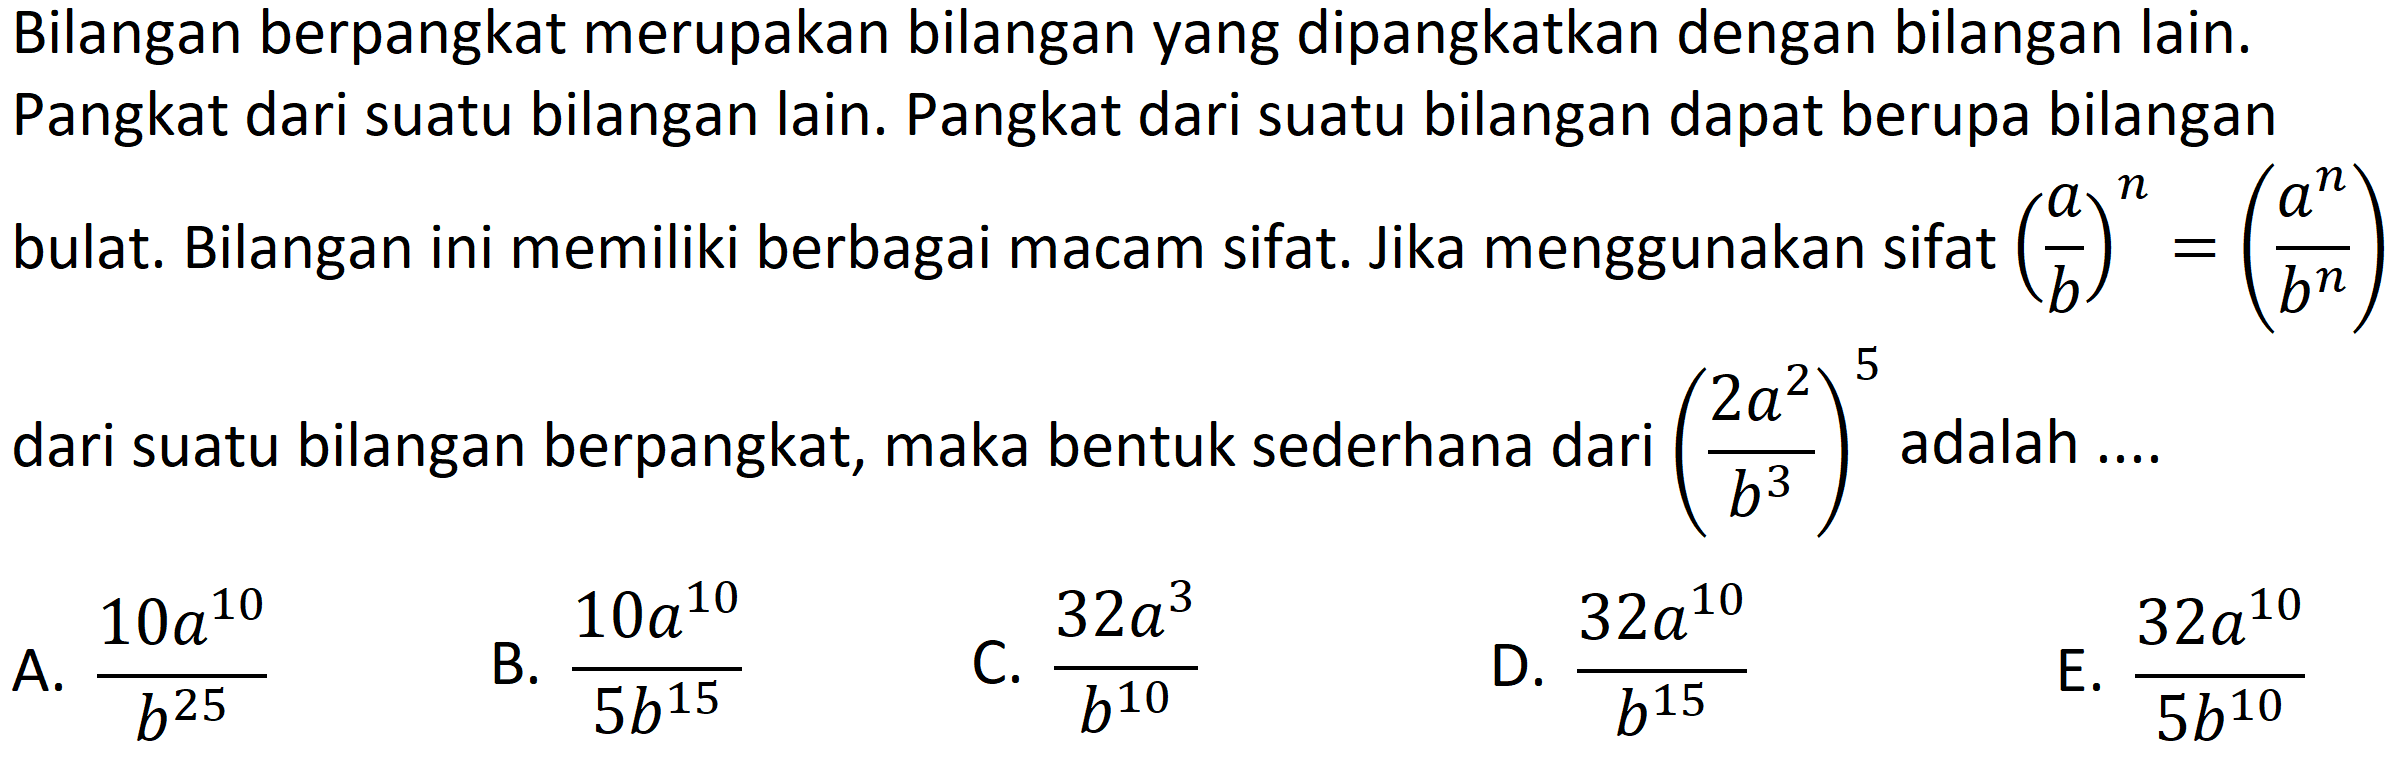 Bilangan berpangkat merupakan bilangan yang dipangkatkan dengan bilangan lain. Pangkat dari suatu bilangan lain. Pangkat dari suatu bilangan dapat berupa bilangan bulat. Bilangan ini memiliki berbagai macam sifat. Jika menggunakan sifat  ((a)/(b))^(n)=((a^(n))/(b^(n)))  dari suatu bilangan berpangkat, maka bentuk sederhana dari  ((2 a^(2))/(b^(3)))^(5)  adalah ....
A.  (10 a^(10))/(b^(25)) 
B.  (10 a^(10))/(5 b^(15)) 
C.  (32 a^(3))/(b^(10)) 
D.  (32 a^(10))/(b^(15)) 
E.  (32 a^(10))/(5 b^(10)) 